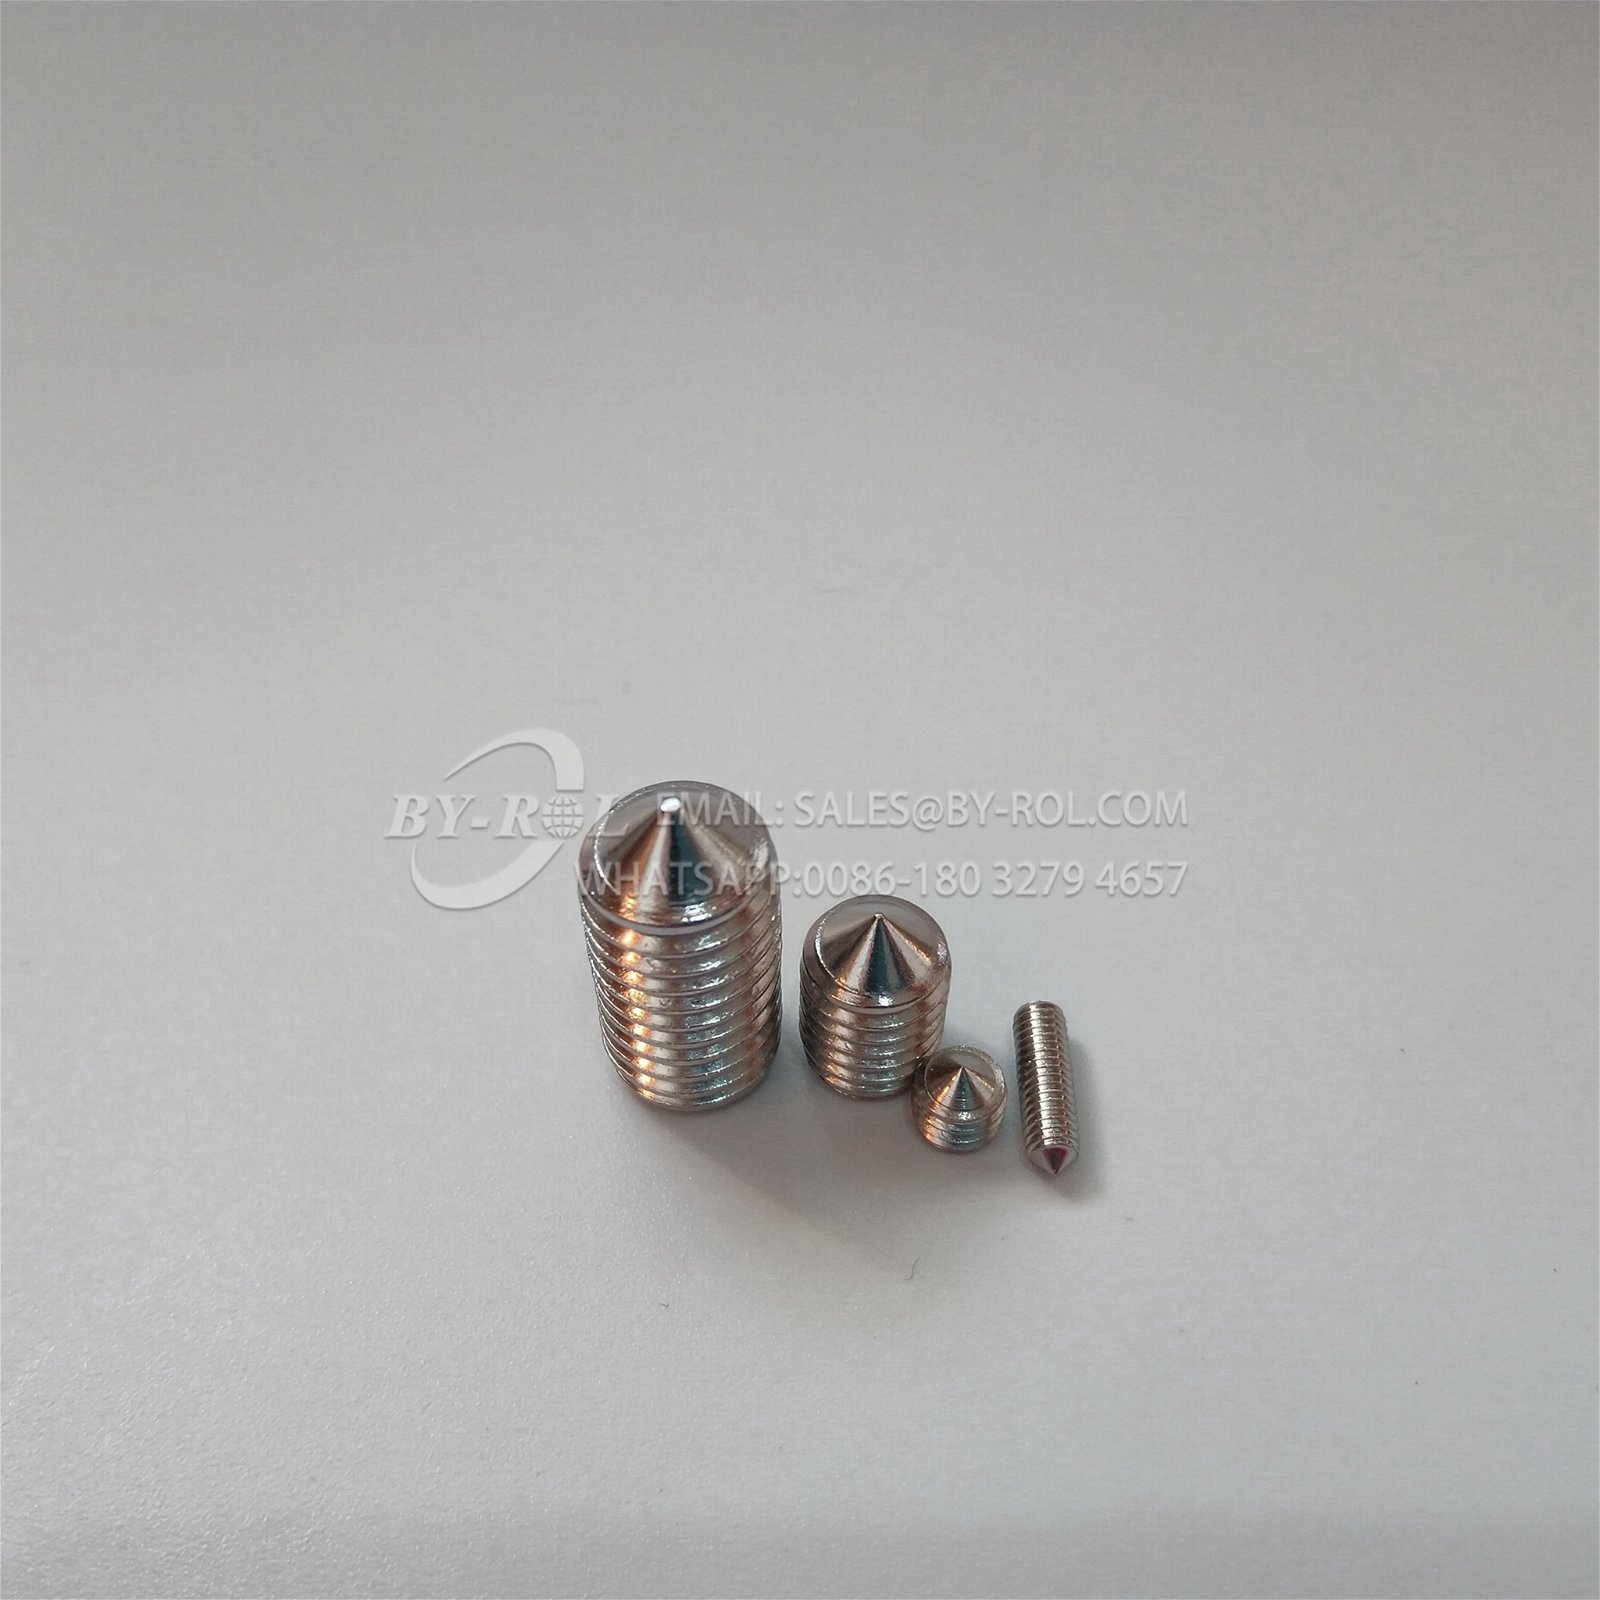 Custom stainless steel set screw special hexagon socket grub set screw with plas 4